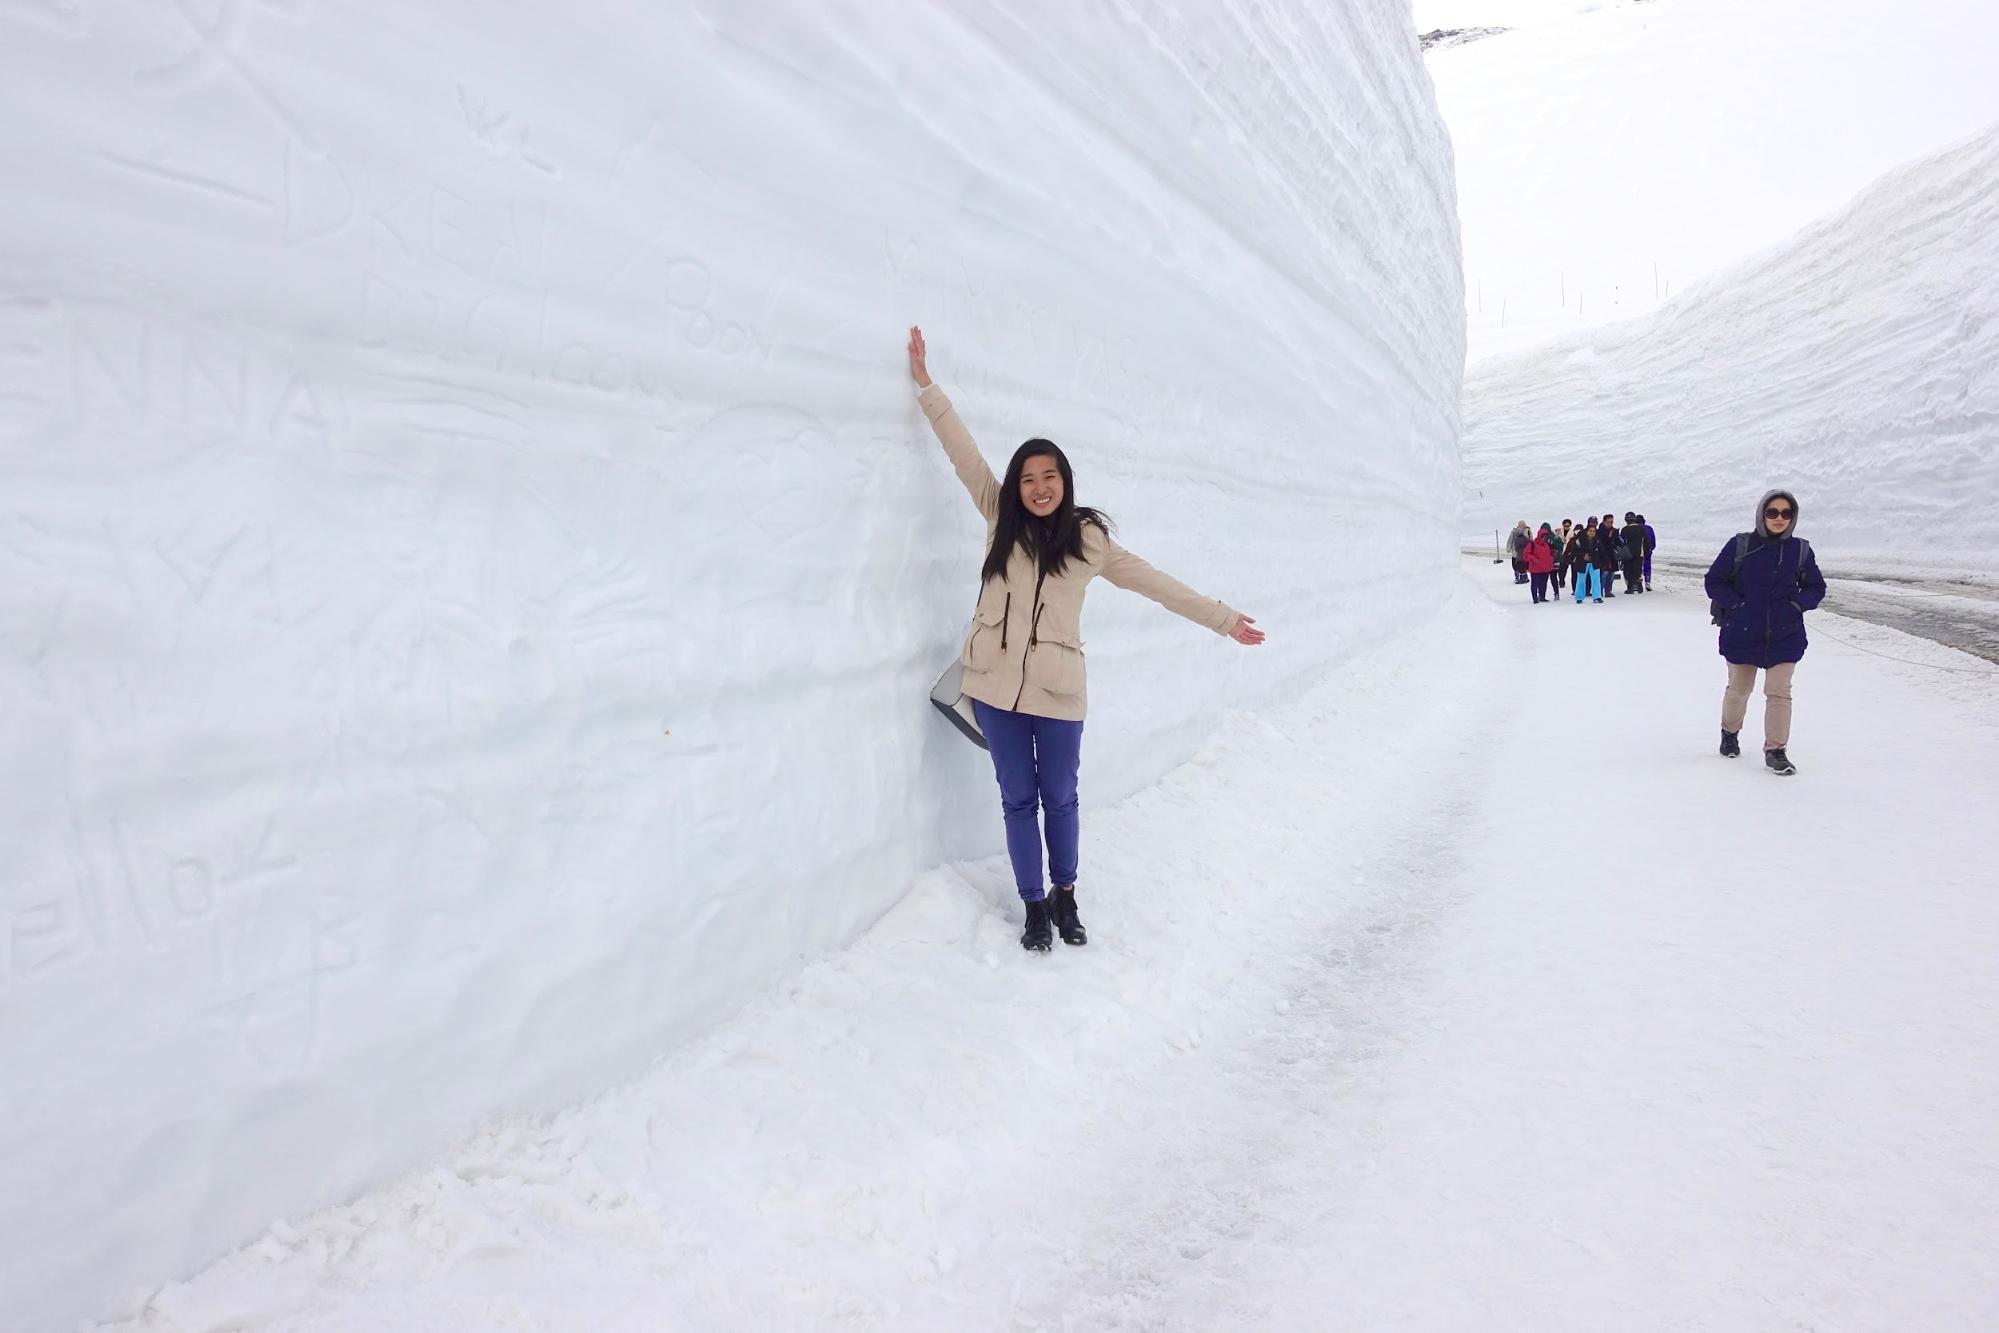 Cung đường chạy quanh núi, tuyết trắng xóa chất cao 17 mét ở Nhật Bản - 6